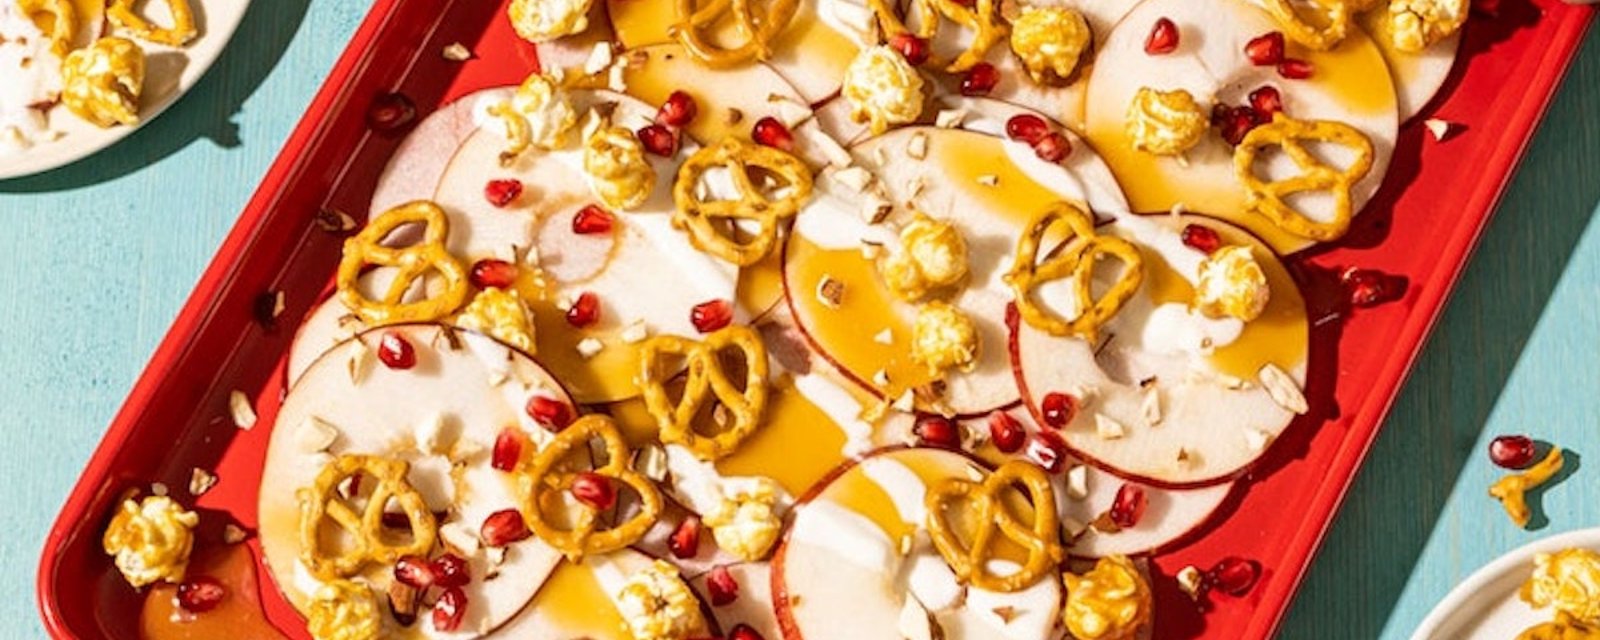 Une collation spéciale: les nachos de pommes, popocorn-caramel